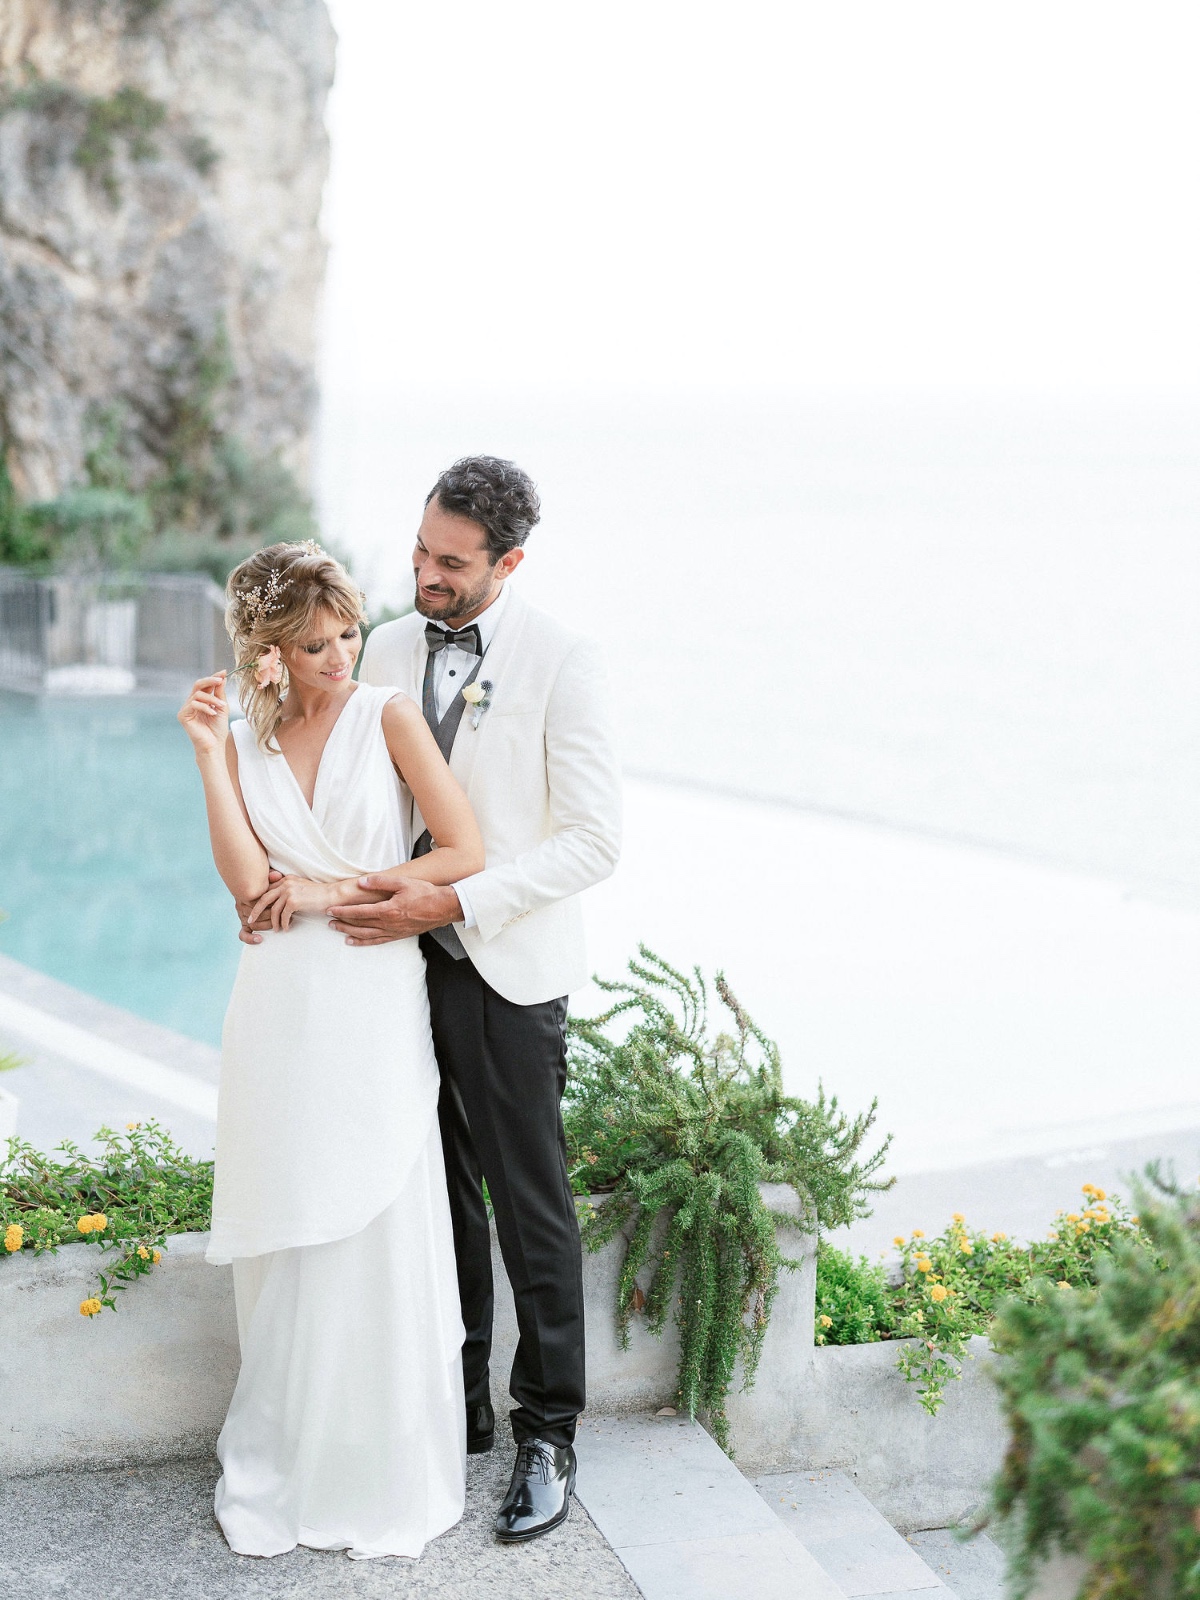 Breathtatking Blue and White Wedding On The Amalfi Coast